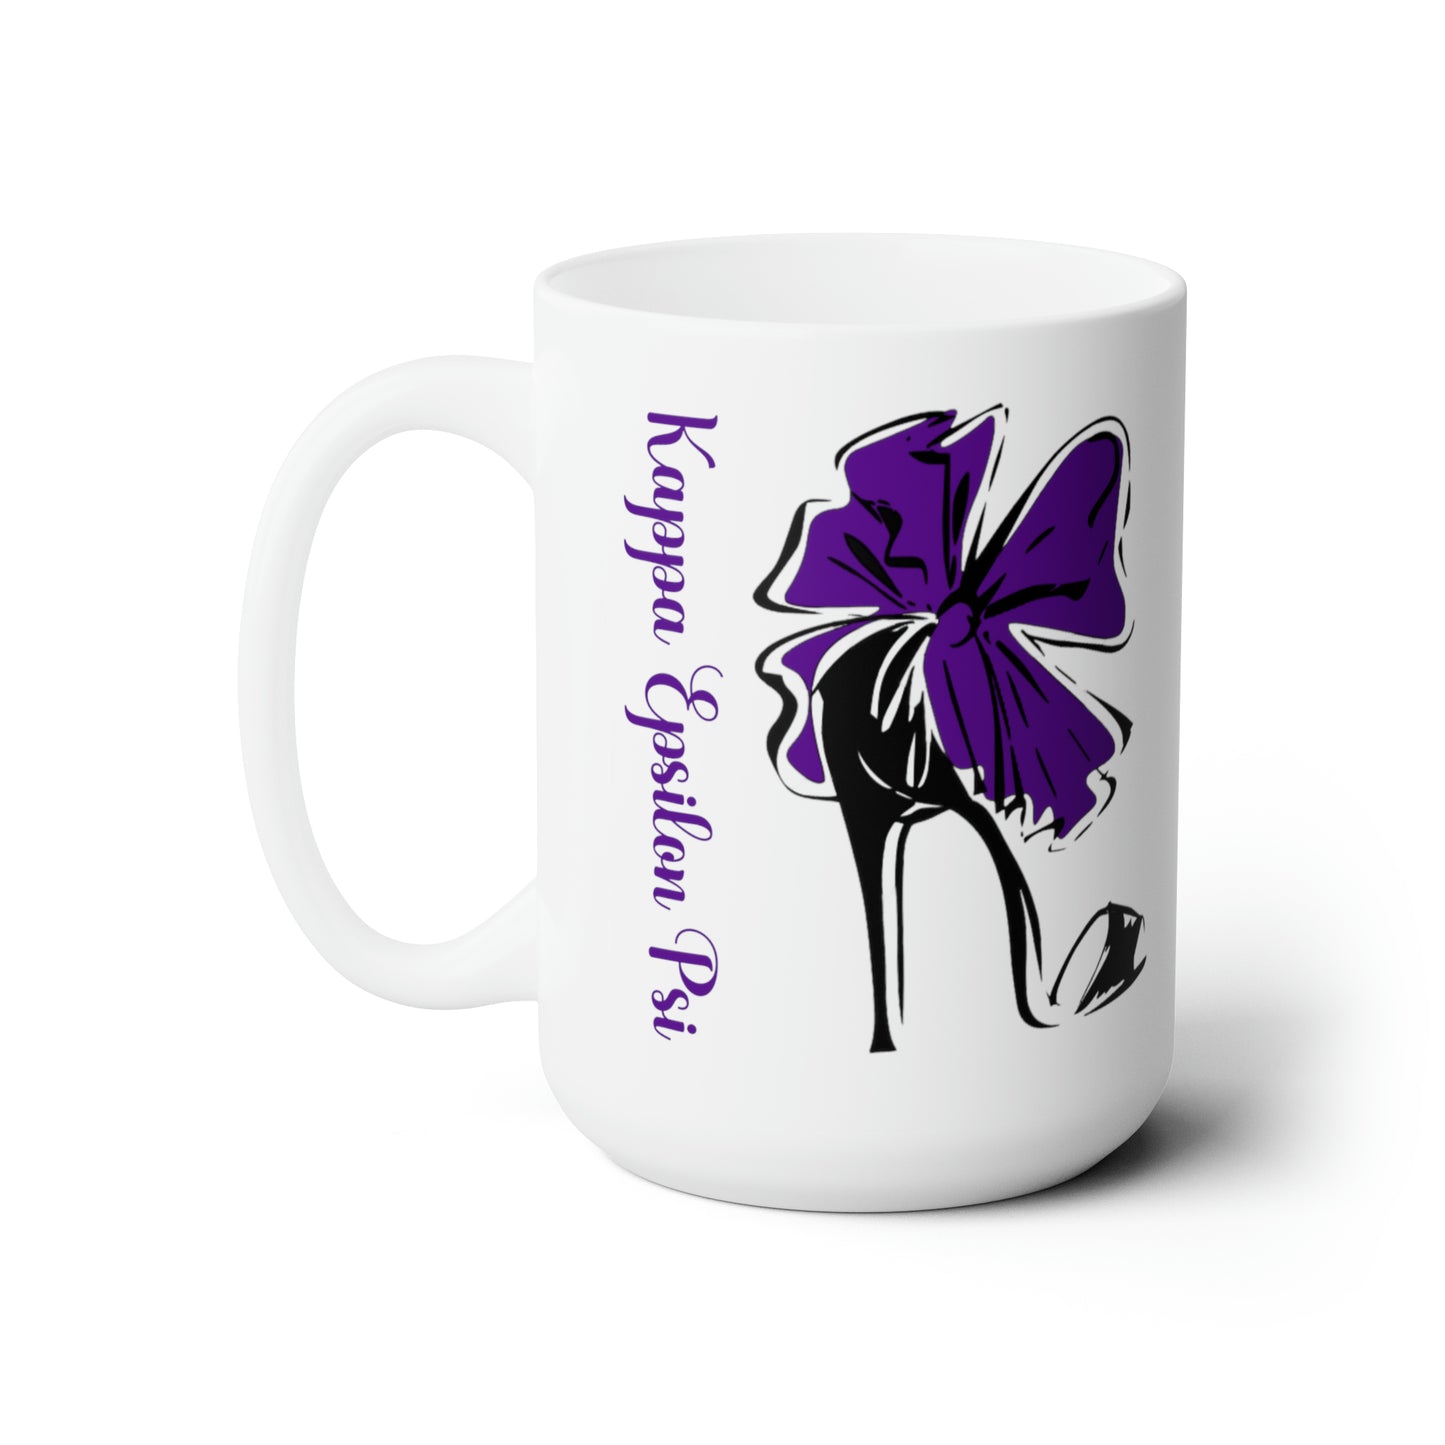 Mug ~ Kappa Epsilon Psi (ΚΕΨ) "High Heel" (Purple) Ceramic Mug 15oz